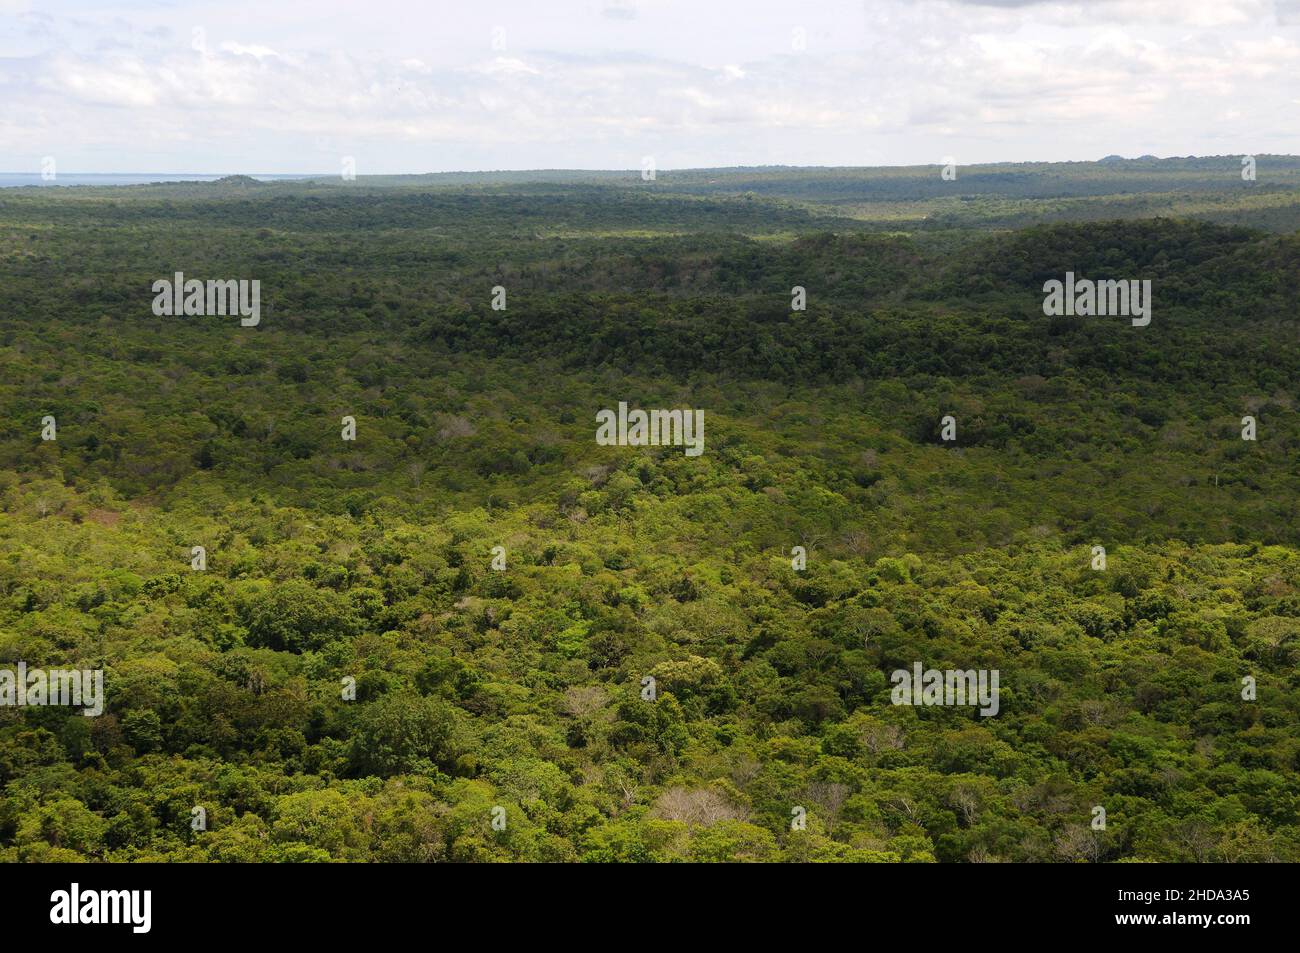 Blick auf die vegetation der amazonas-Savanne in der Stadt Alter do Chão, im Bundesstaat Pará, Brasilien. Stockfoto